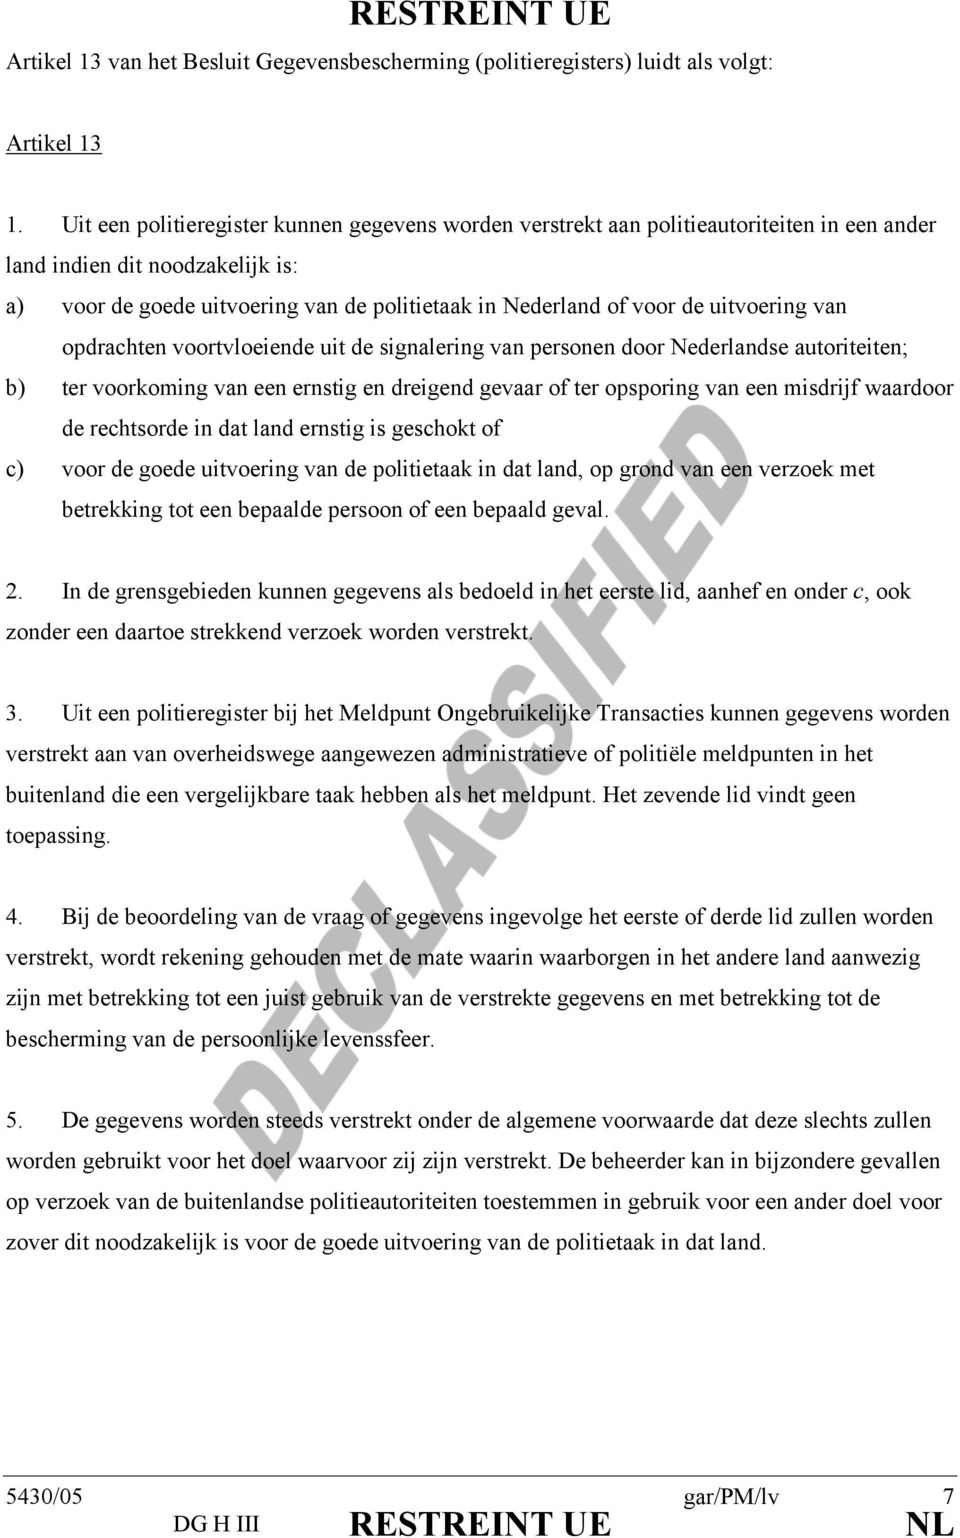 uitvoering van opdrachten voortvloeiende uit de signalering van personen door Nederlandse autoriteiten; b) ter voorkoming van een ernstig en dreigend gevaar of ter opsporing van een misdrijf waardoor